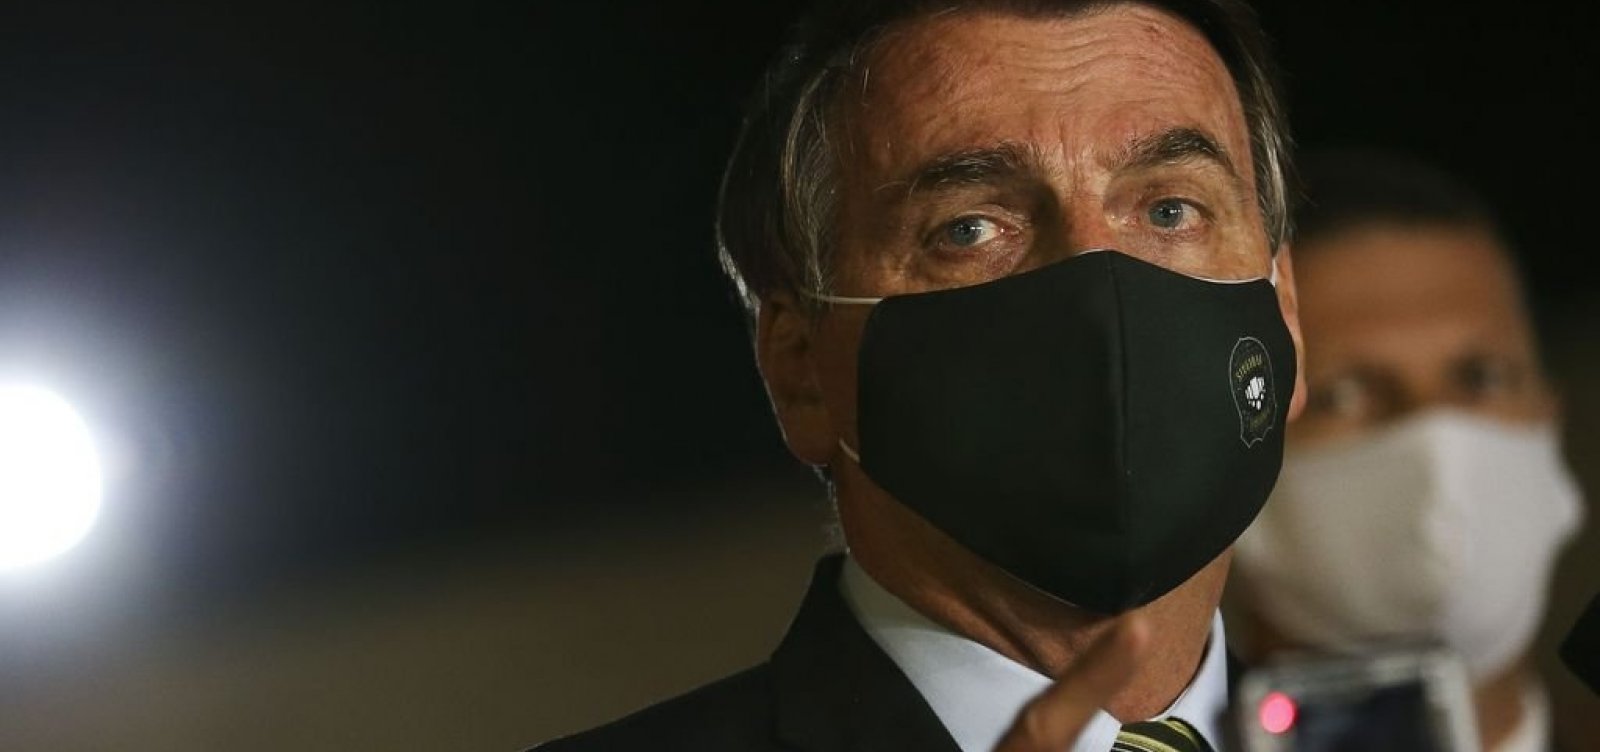 'Se coloca no meu lugar. Passa por cima do Supremo?', diz Bolsonaro a apoiador um dia após criticar decisões da Corte